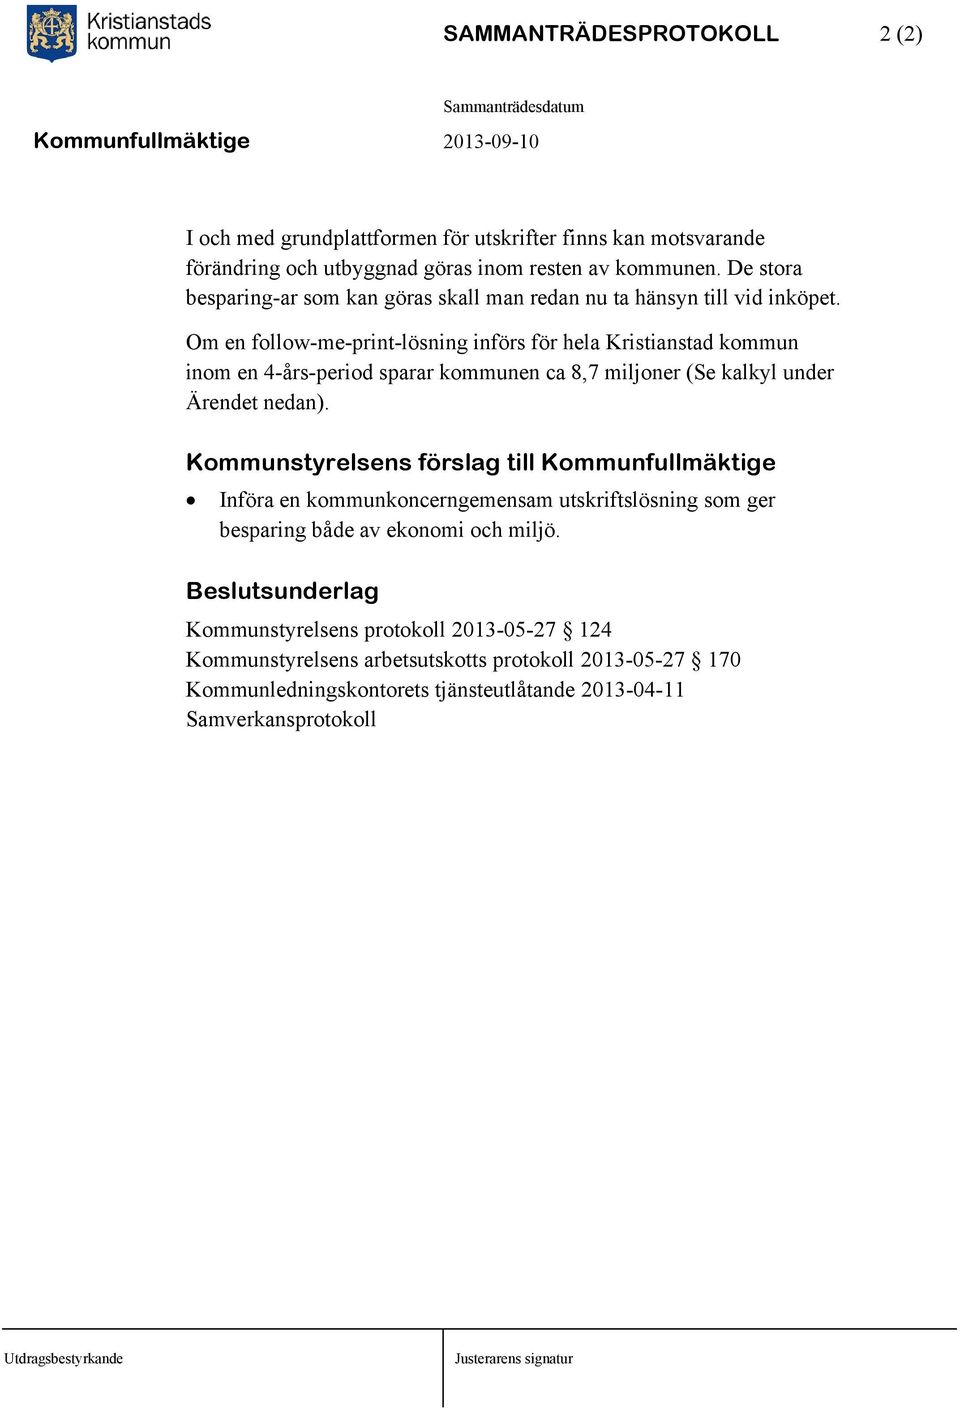 Om en follow-me-print-lösning införs för hela Kristianstad kommun inom en 4-års-period sparar kommunen ca 8,7 miljoner (Se kalkyl under Ärendet nedan).